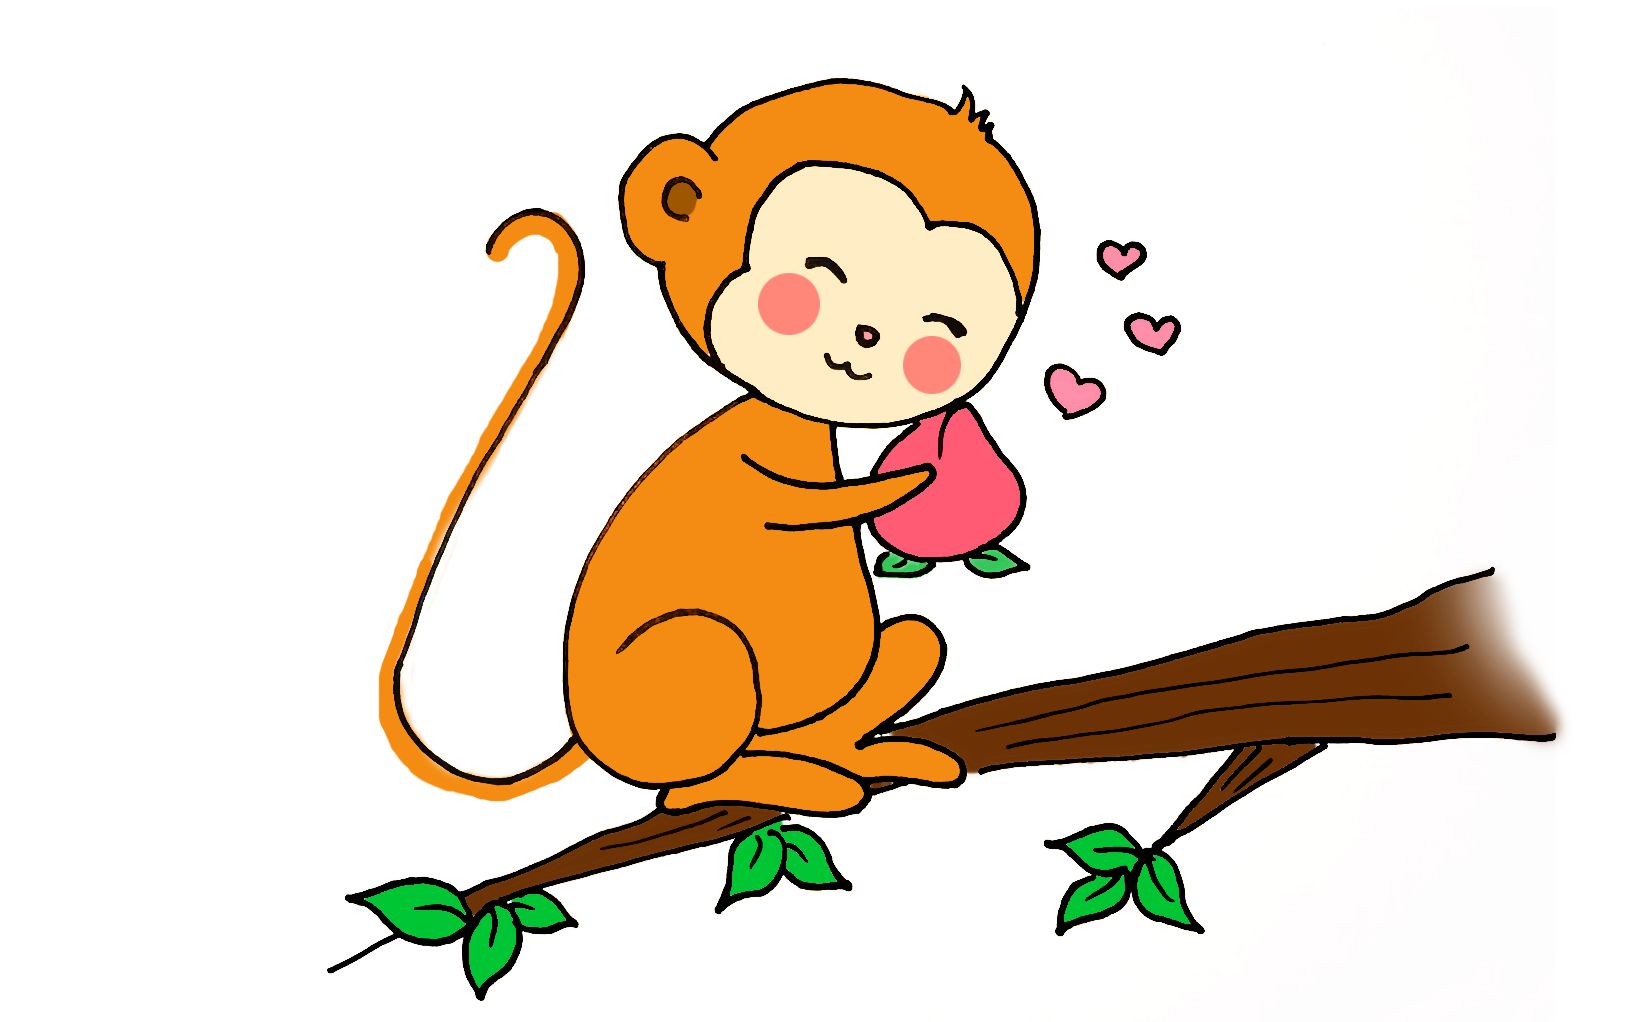 亲子儿童简笔画 用数字16画小猴子摘桃,简单可爱